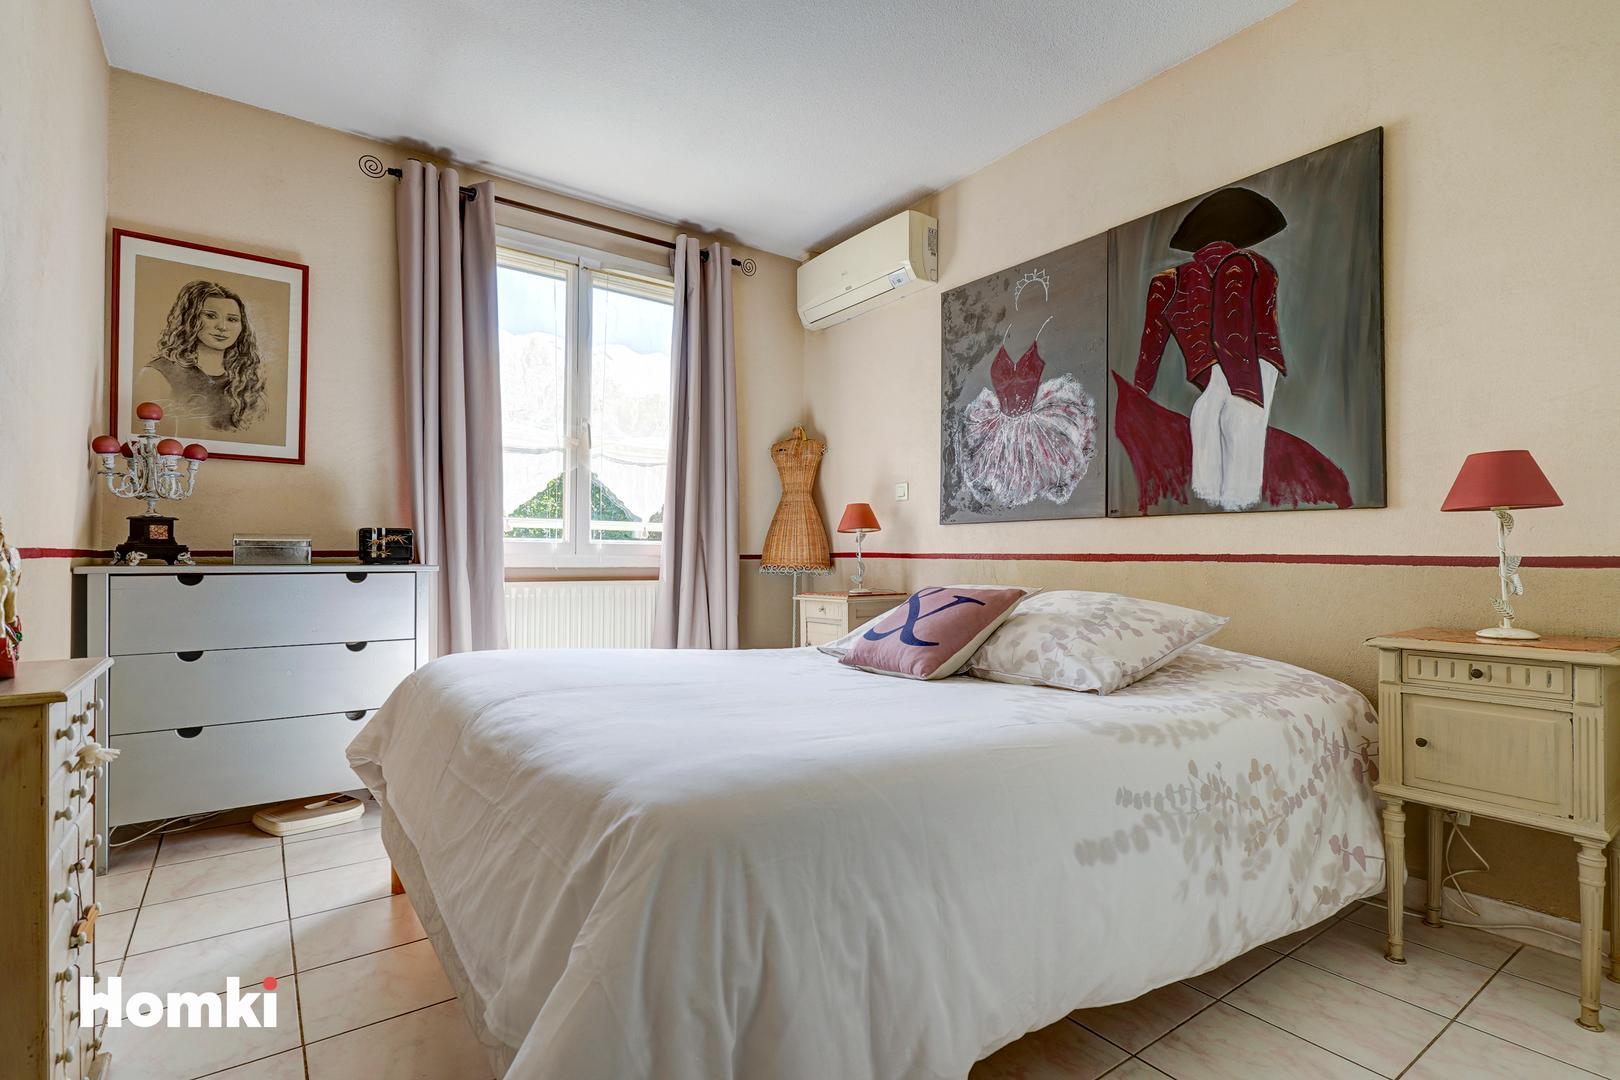 Homki - Vente Maison/villa  de 100.0 m² à Marseille 13010